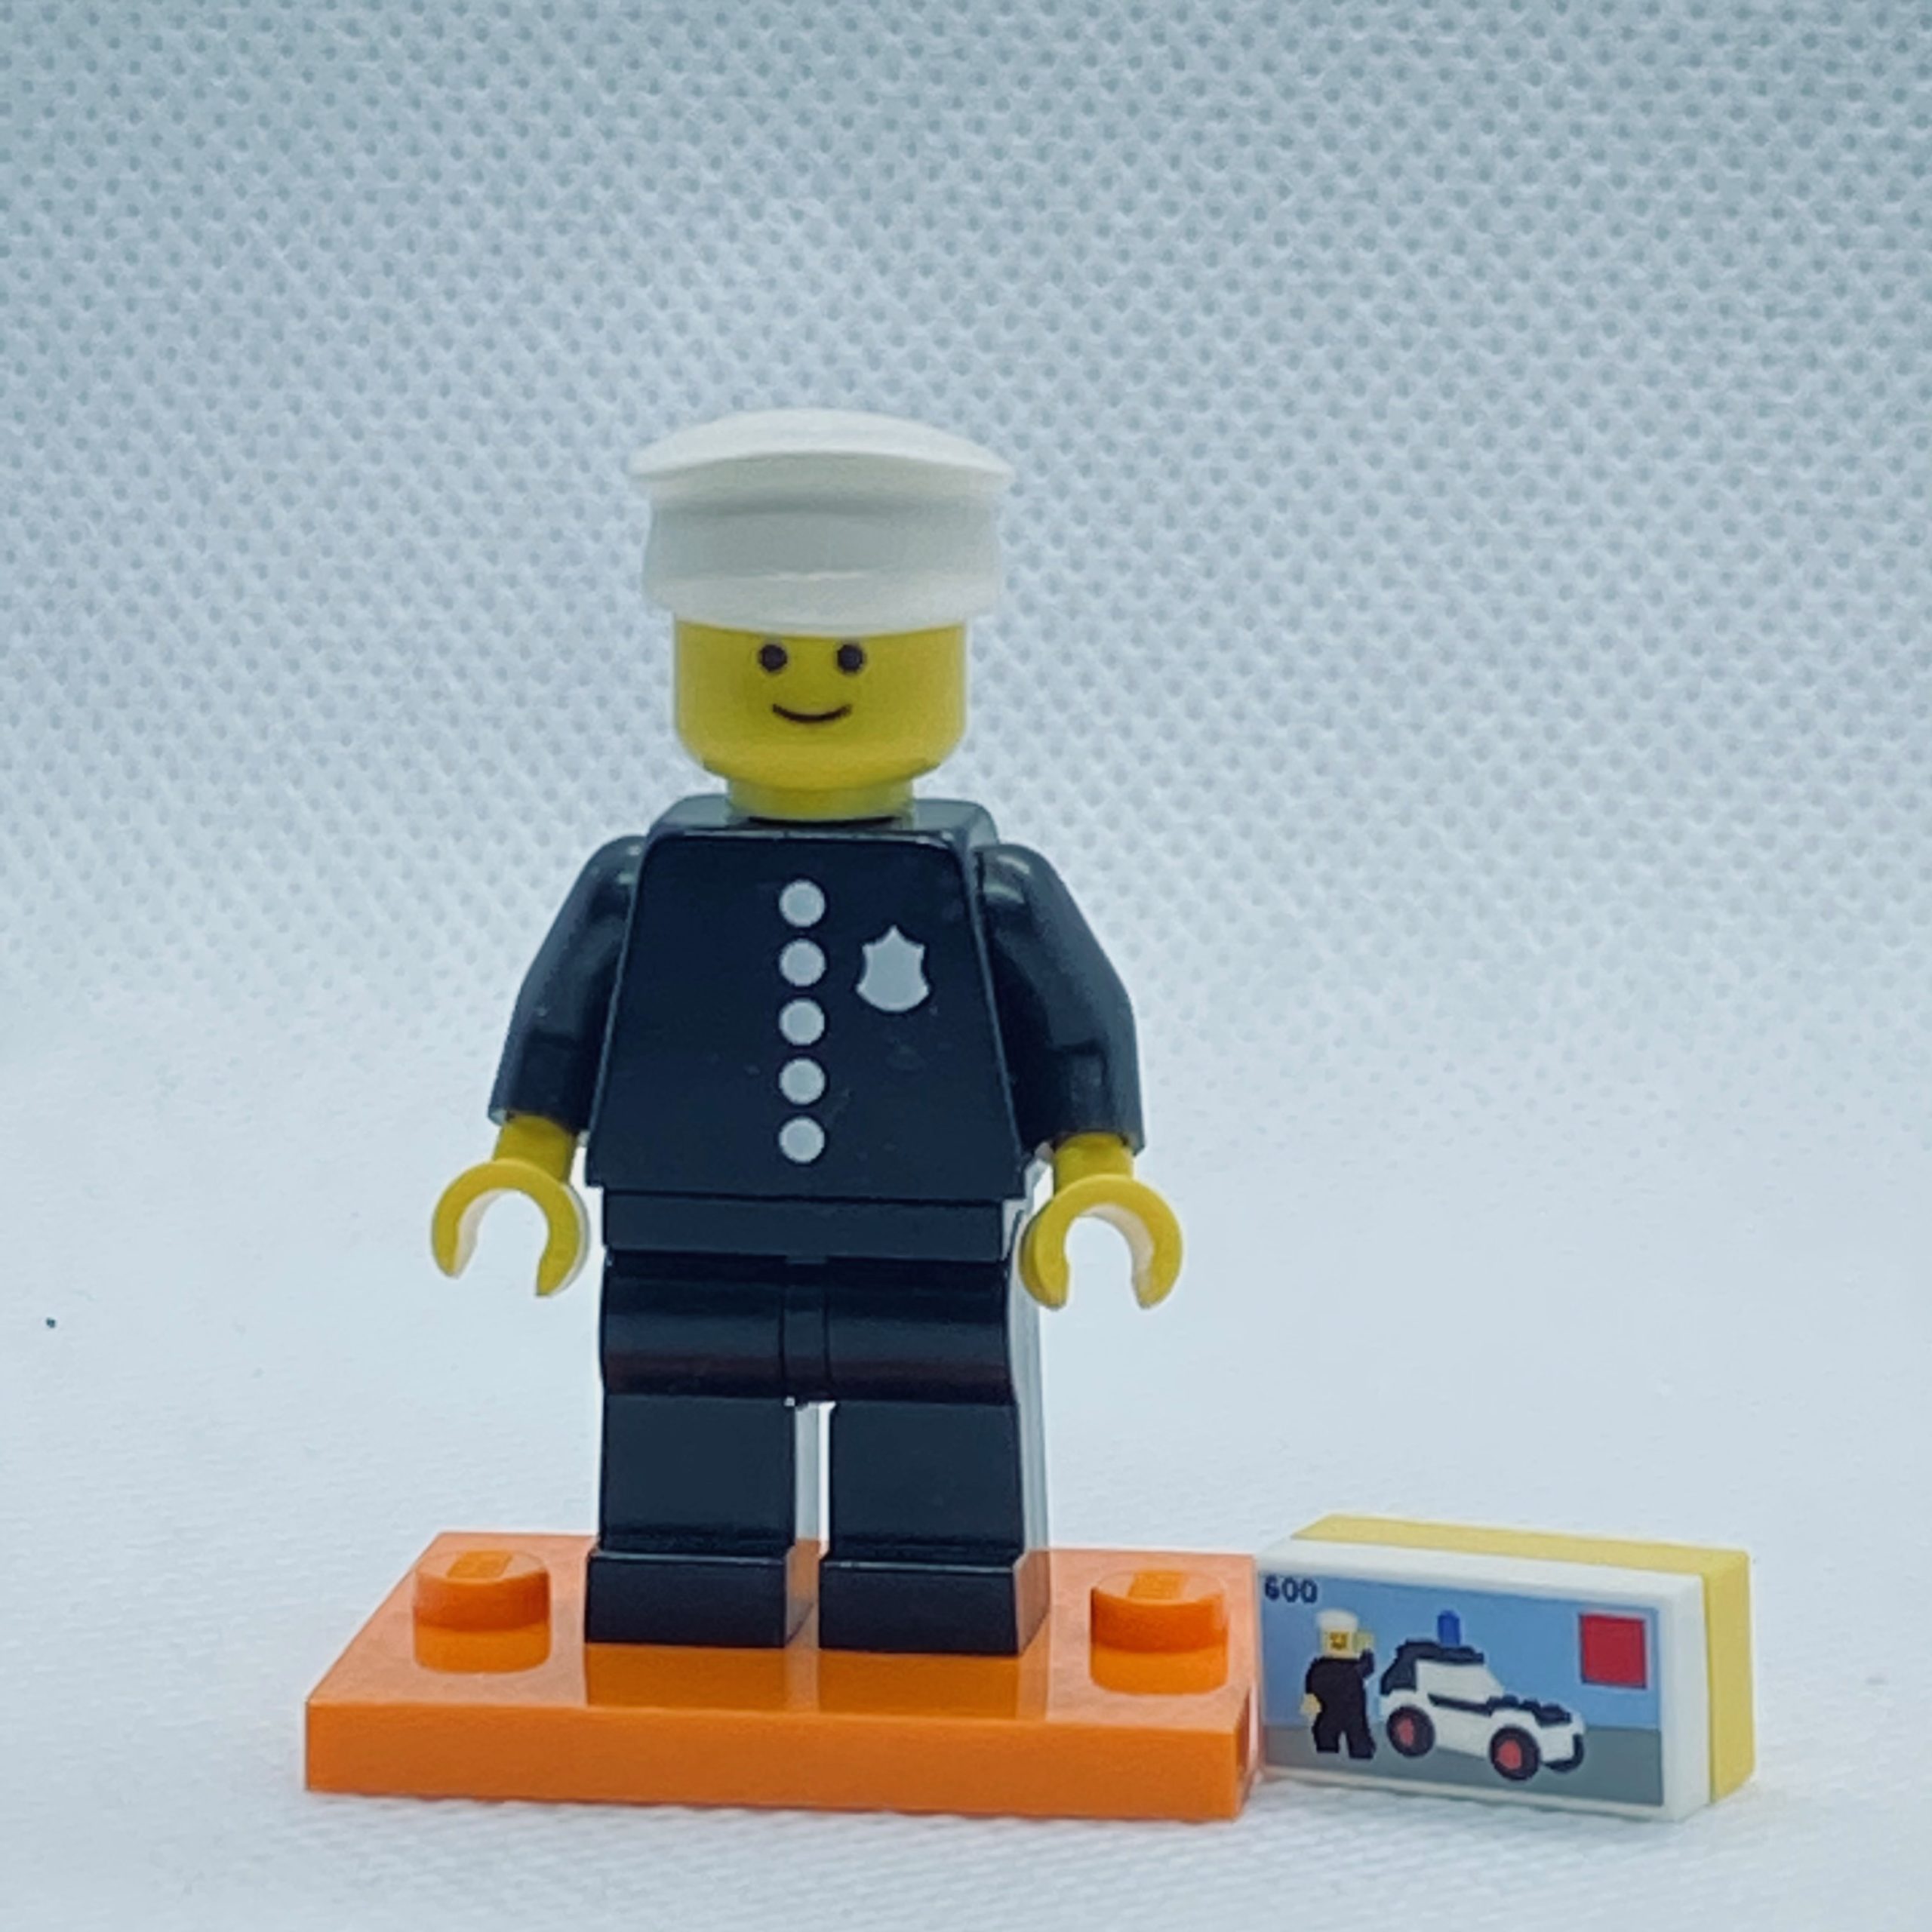 klip Helt vildt nakke LEGO 71021 CMF Series 18 Minifigures 1978 Classic Police Officer - Brick  Land